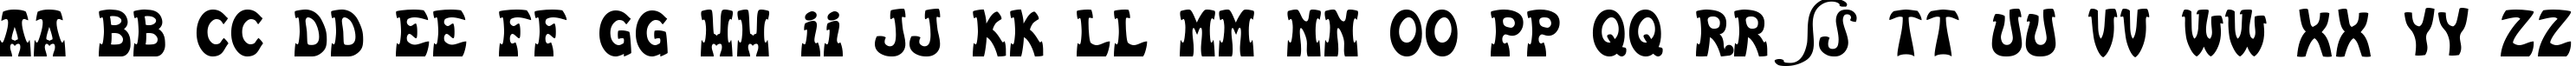 Пример написания английского алфавита шрифтом Euskal Font Normal